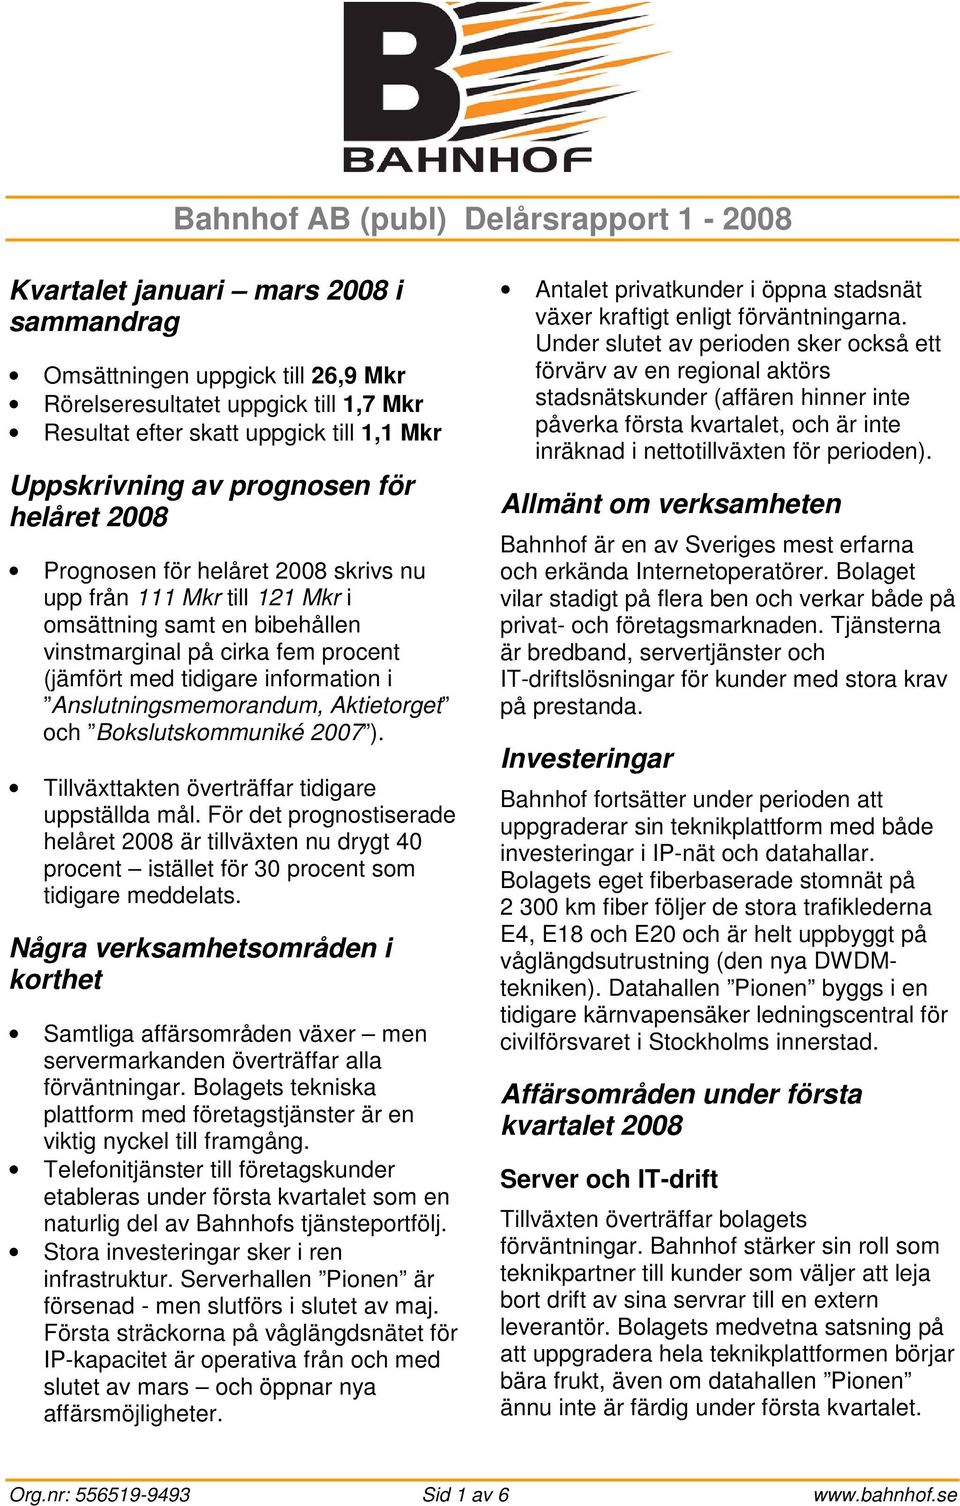 information i Anslutningsmemorandum, Aktietorget och Bokslutskommuniké 2007 ). Tillväxttakten överträffar tidigare uppställda mål.